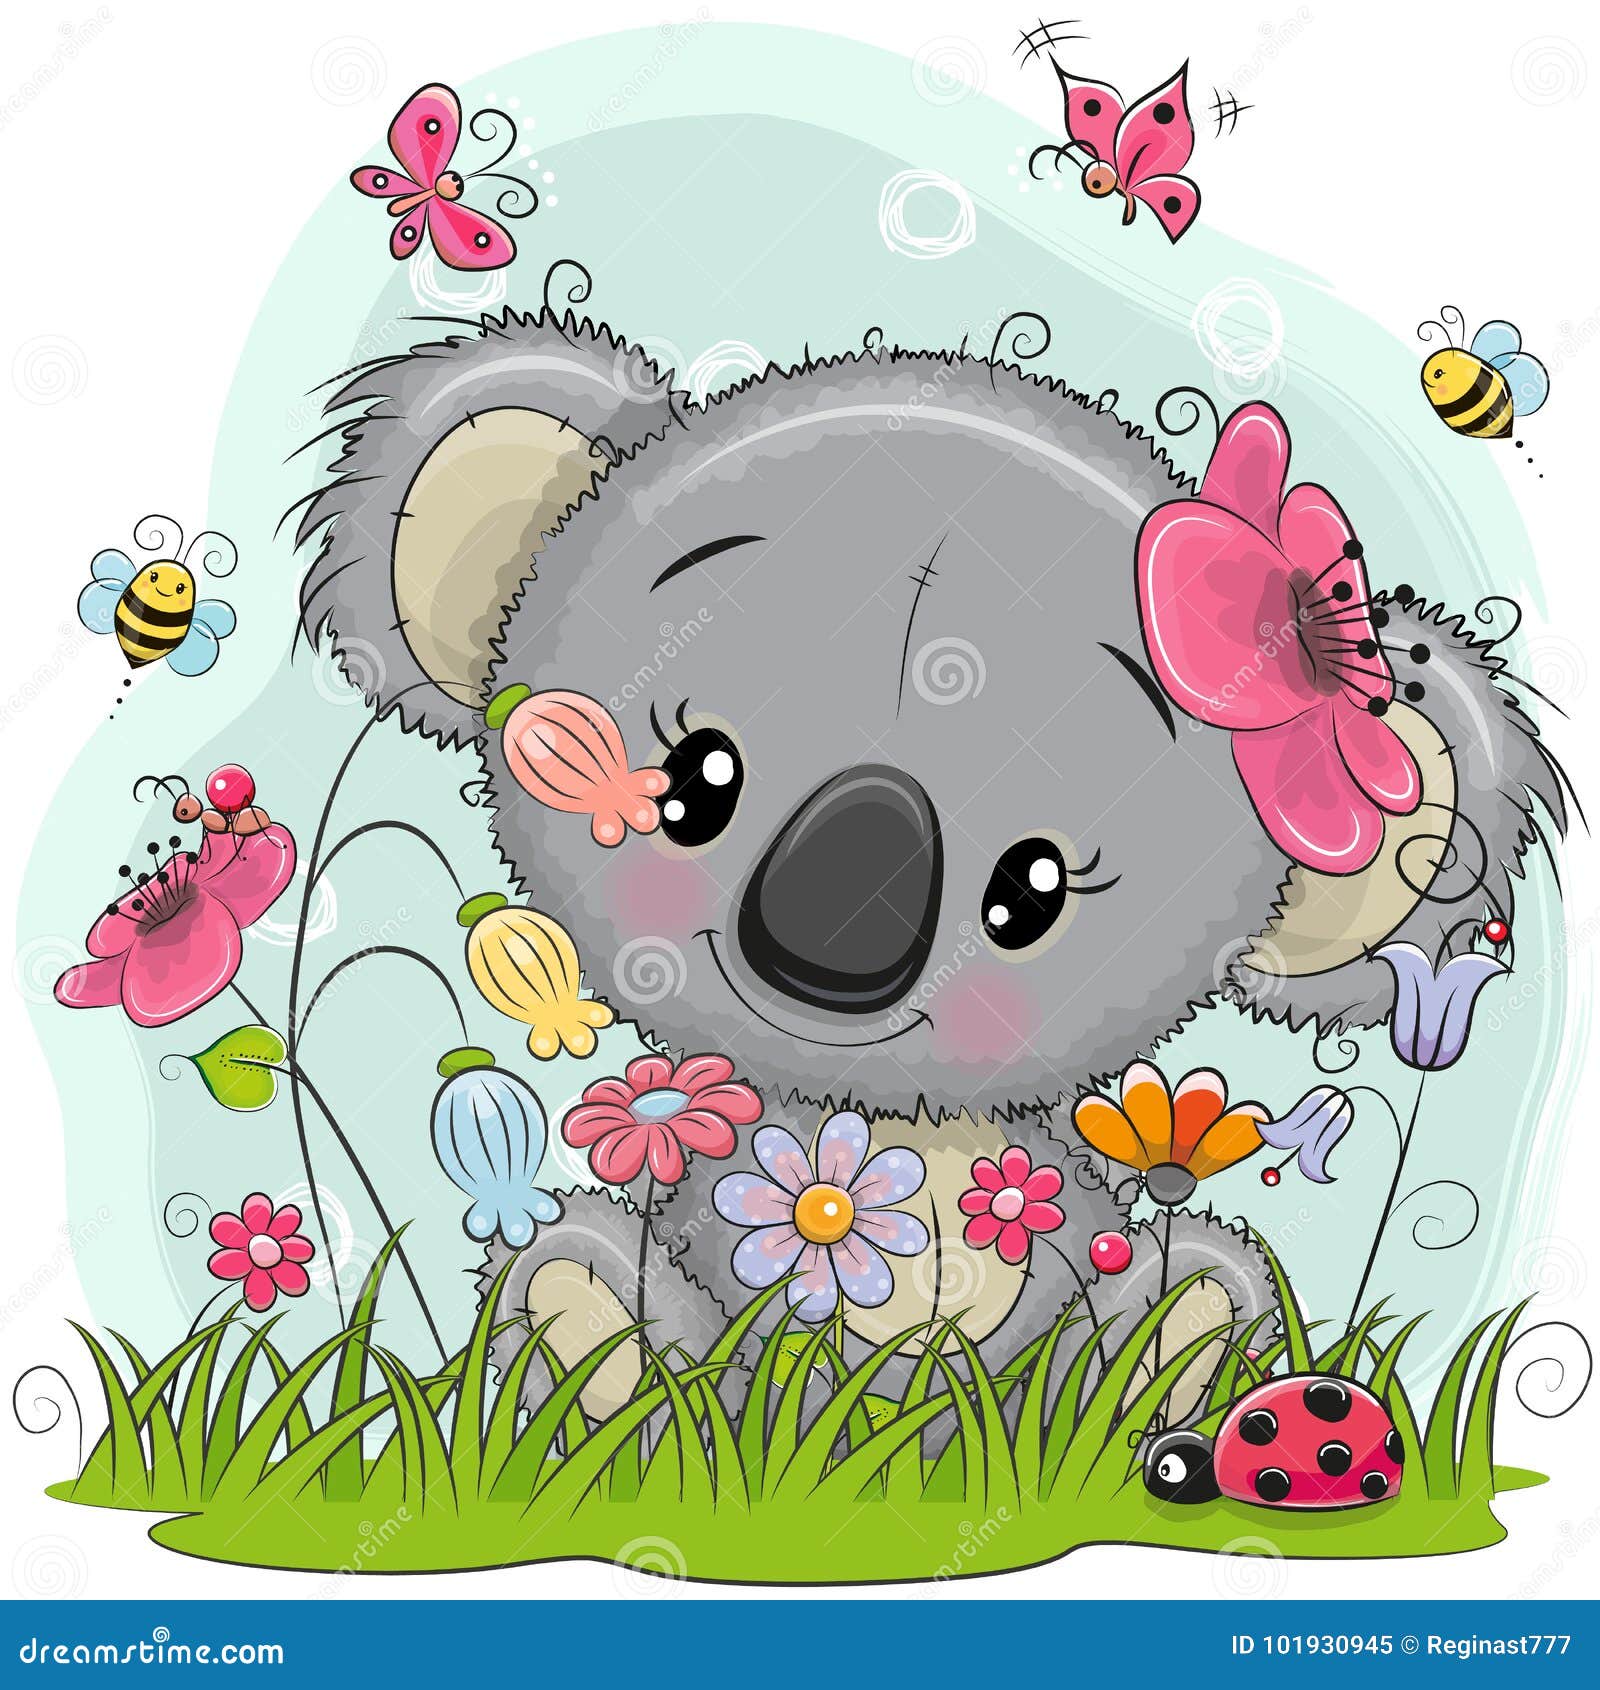 Cartoon Koala Stock Illustrations – 15,708 Cartoon Koala Stock  Illustrations, Vectors & Clipart - Dreamstime